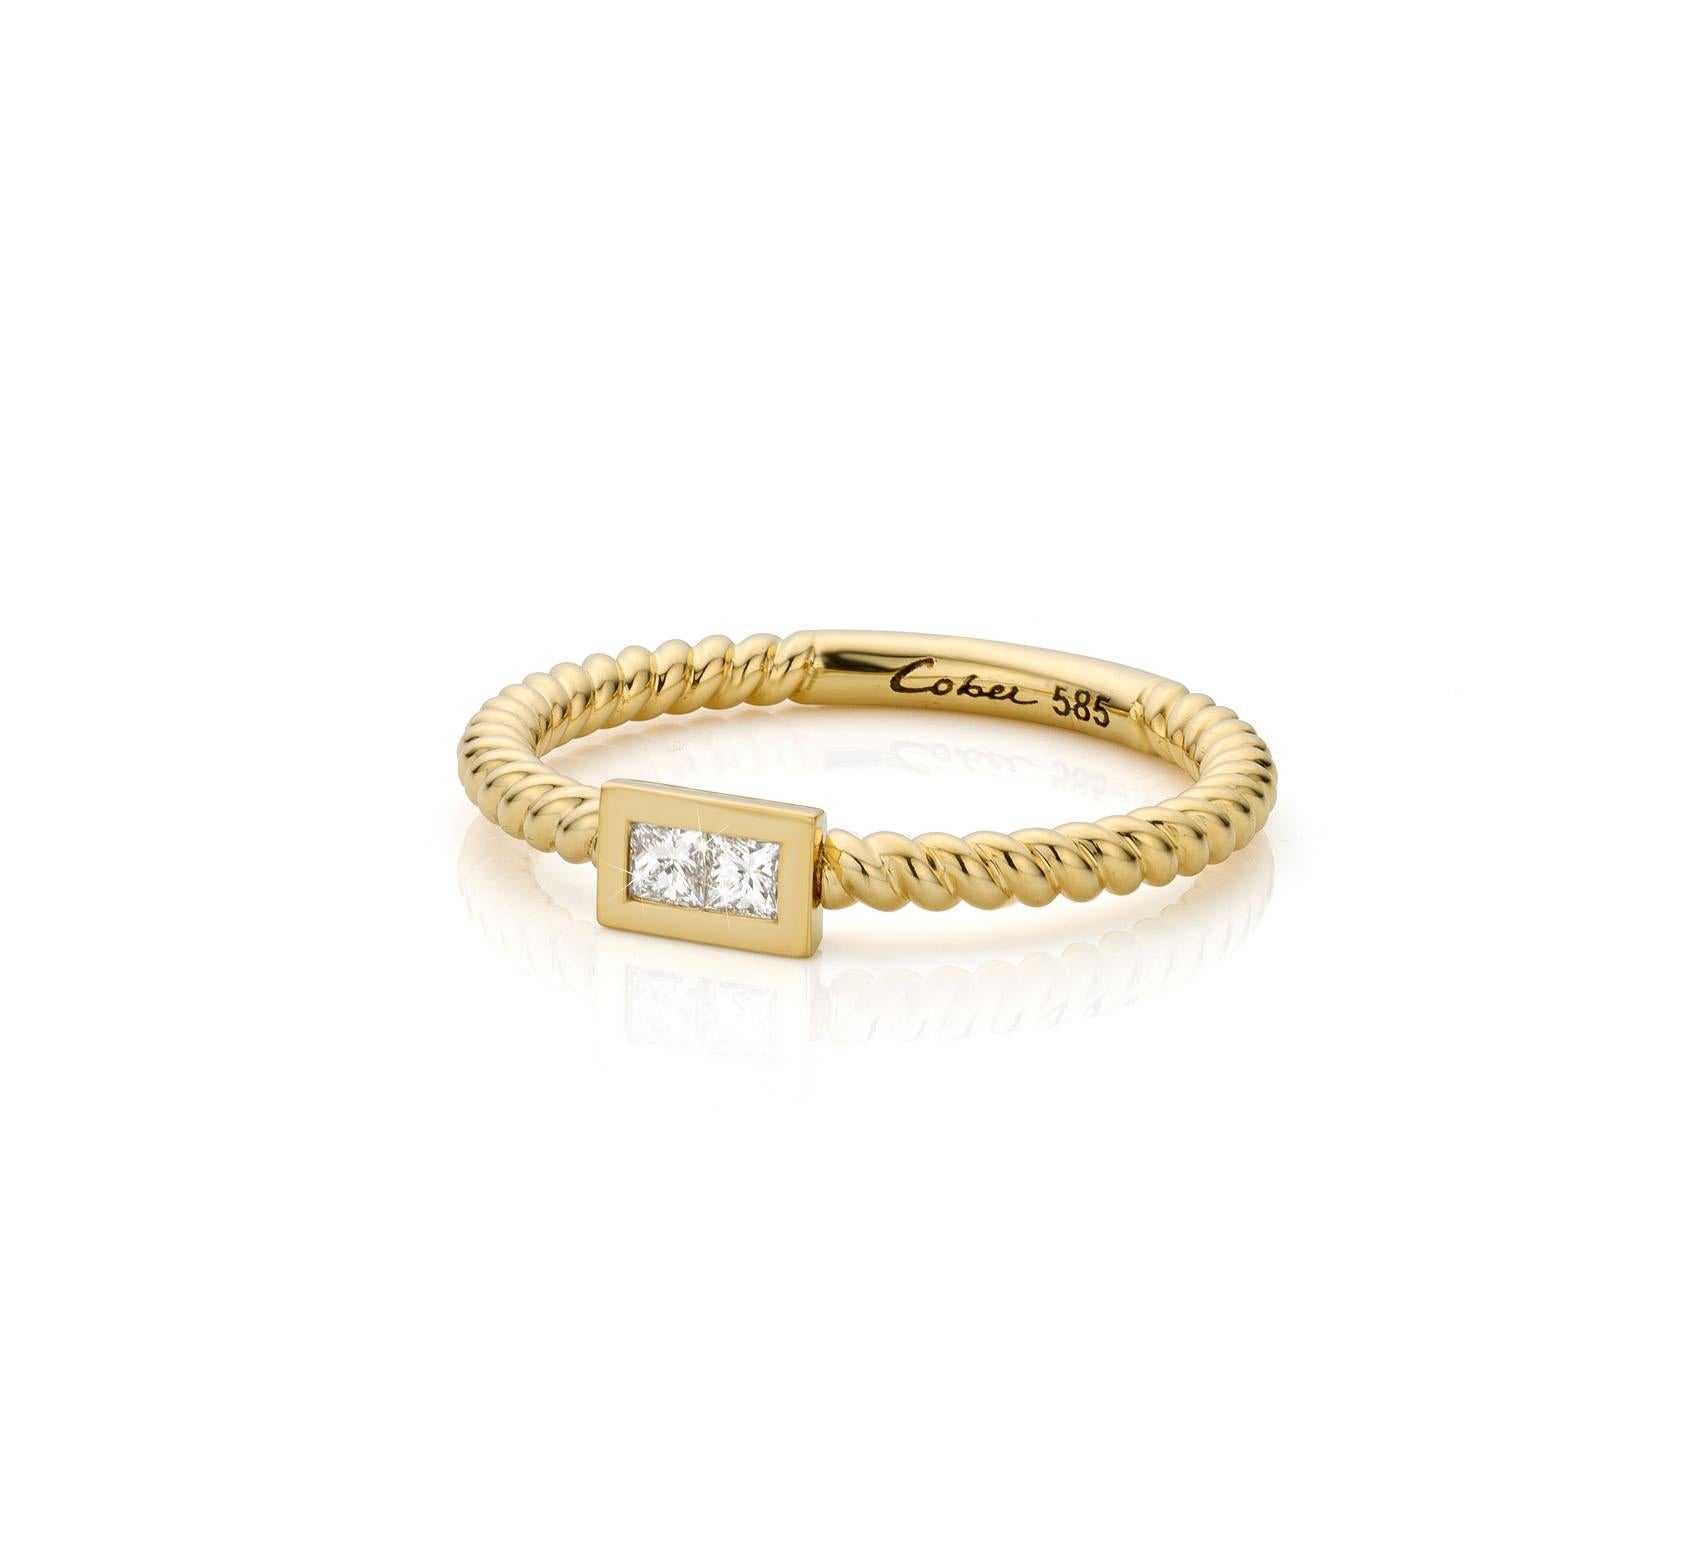 For Sale:   Cober Ibiza “Princess” set with Diamonds Made of 14 Carat fairtrade Gold Ring 2